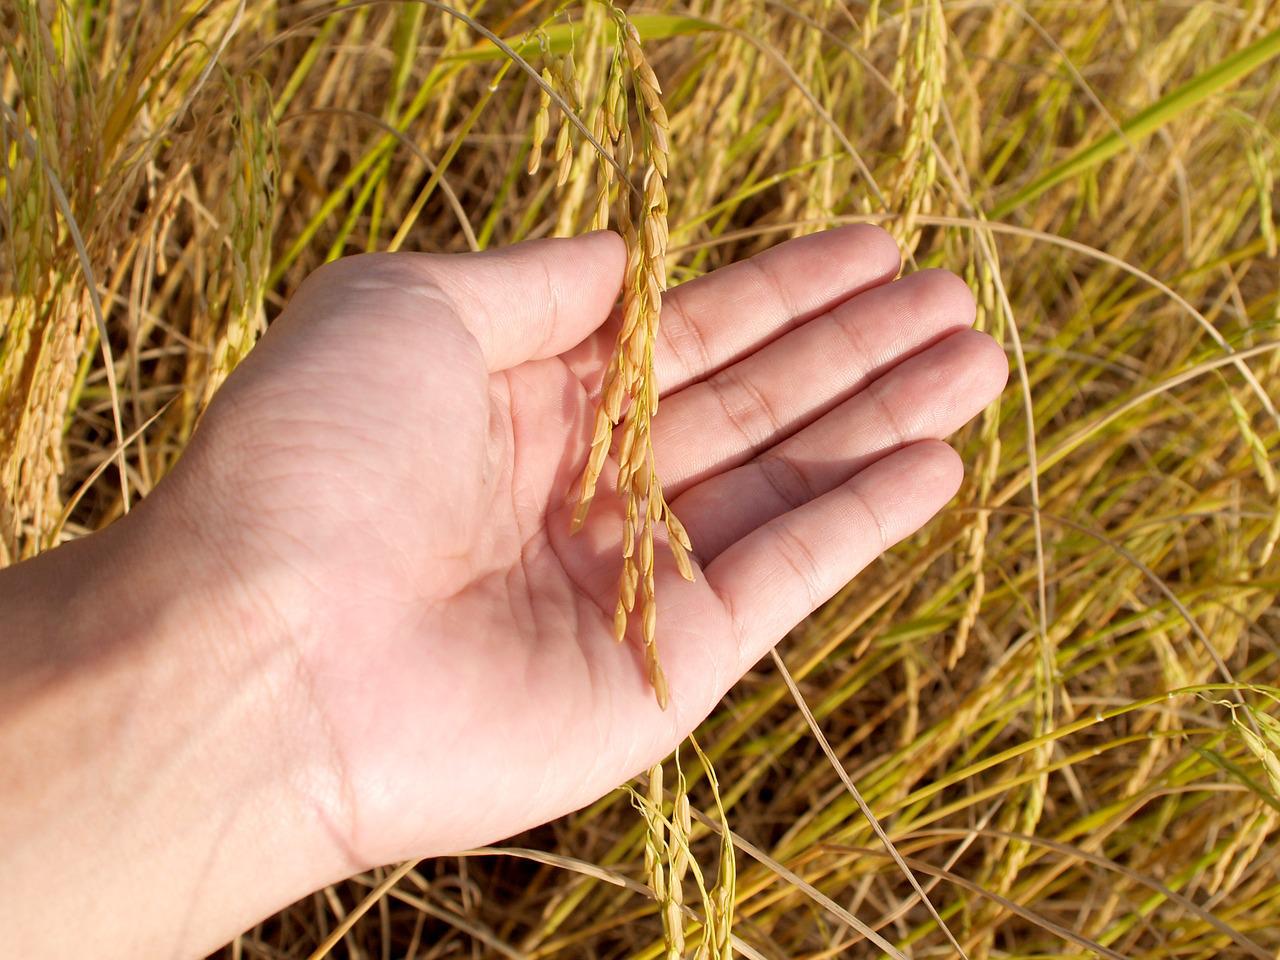 Rettaikili rice sowing field